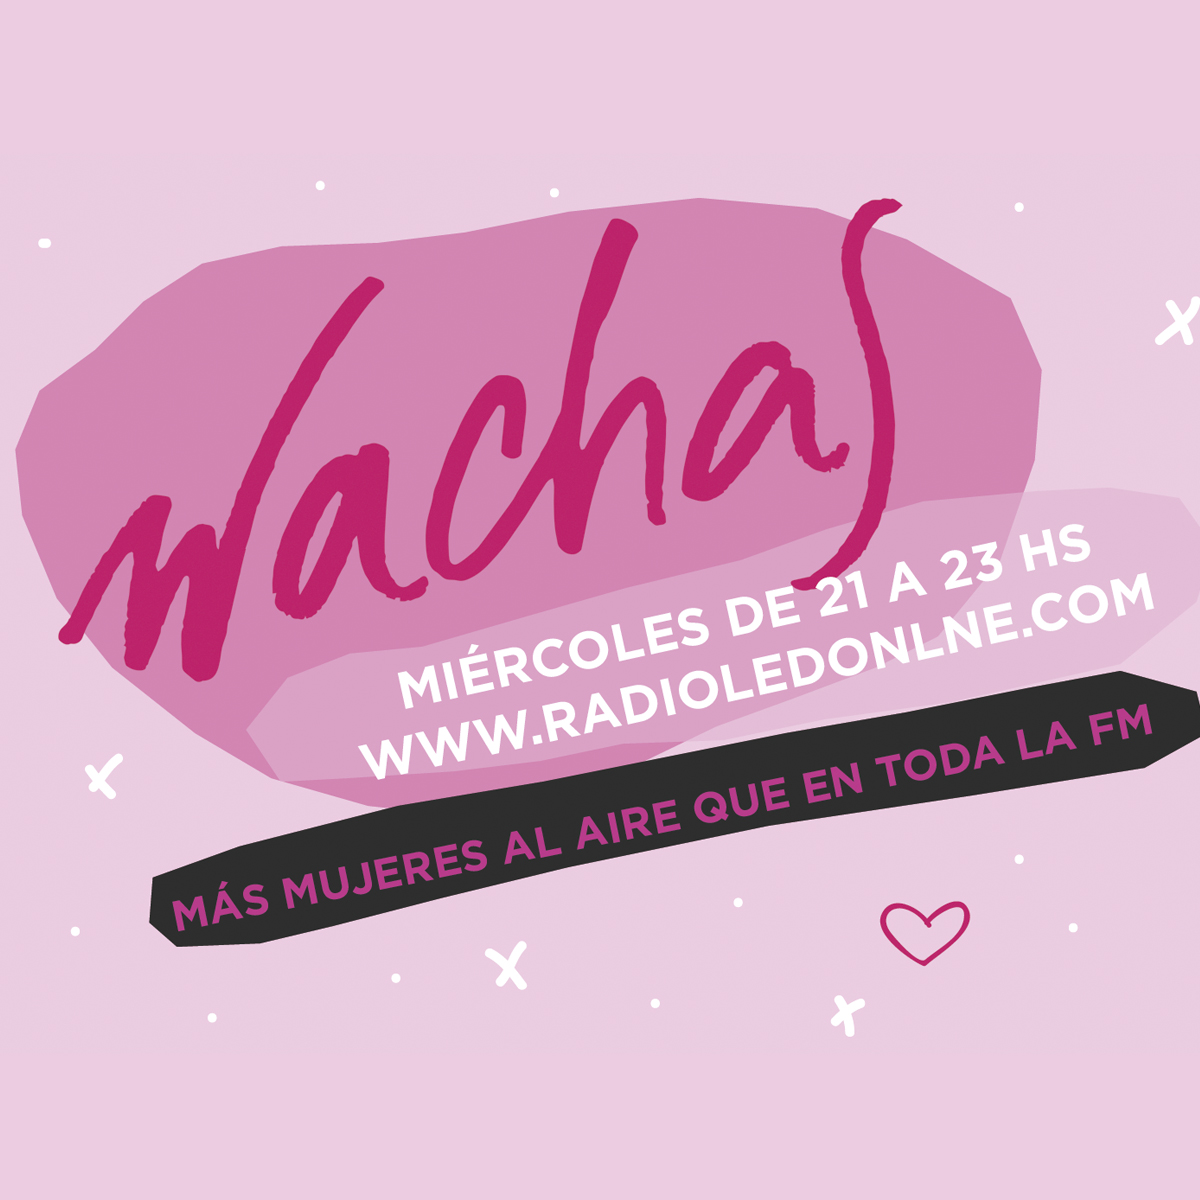 #Podcast Wachas 23.08: Entrevista con @riotmaria #PutaFeminista, @YoFermina #virginidad y más!